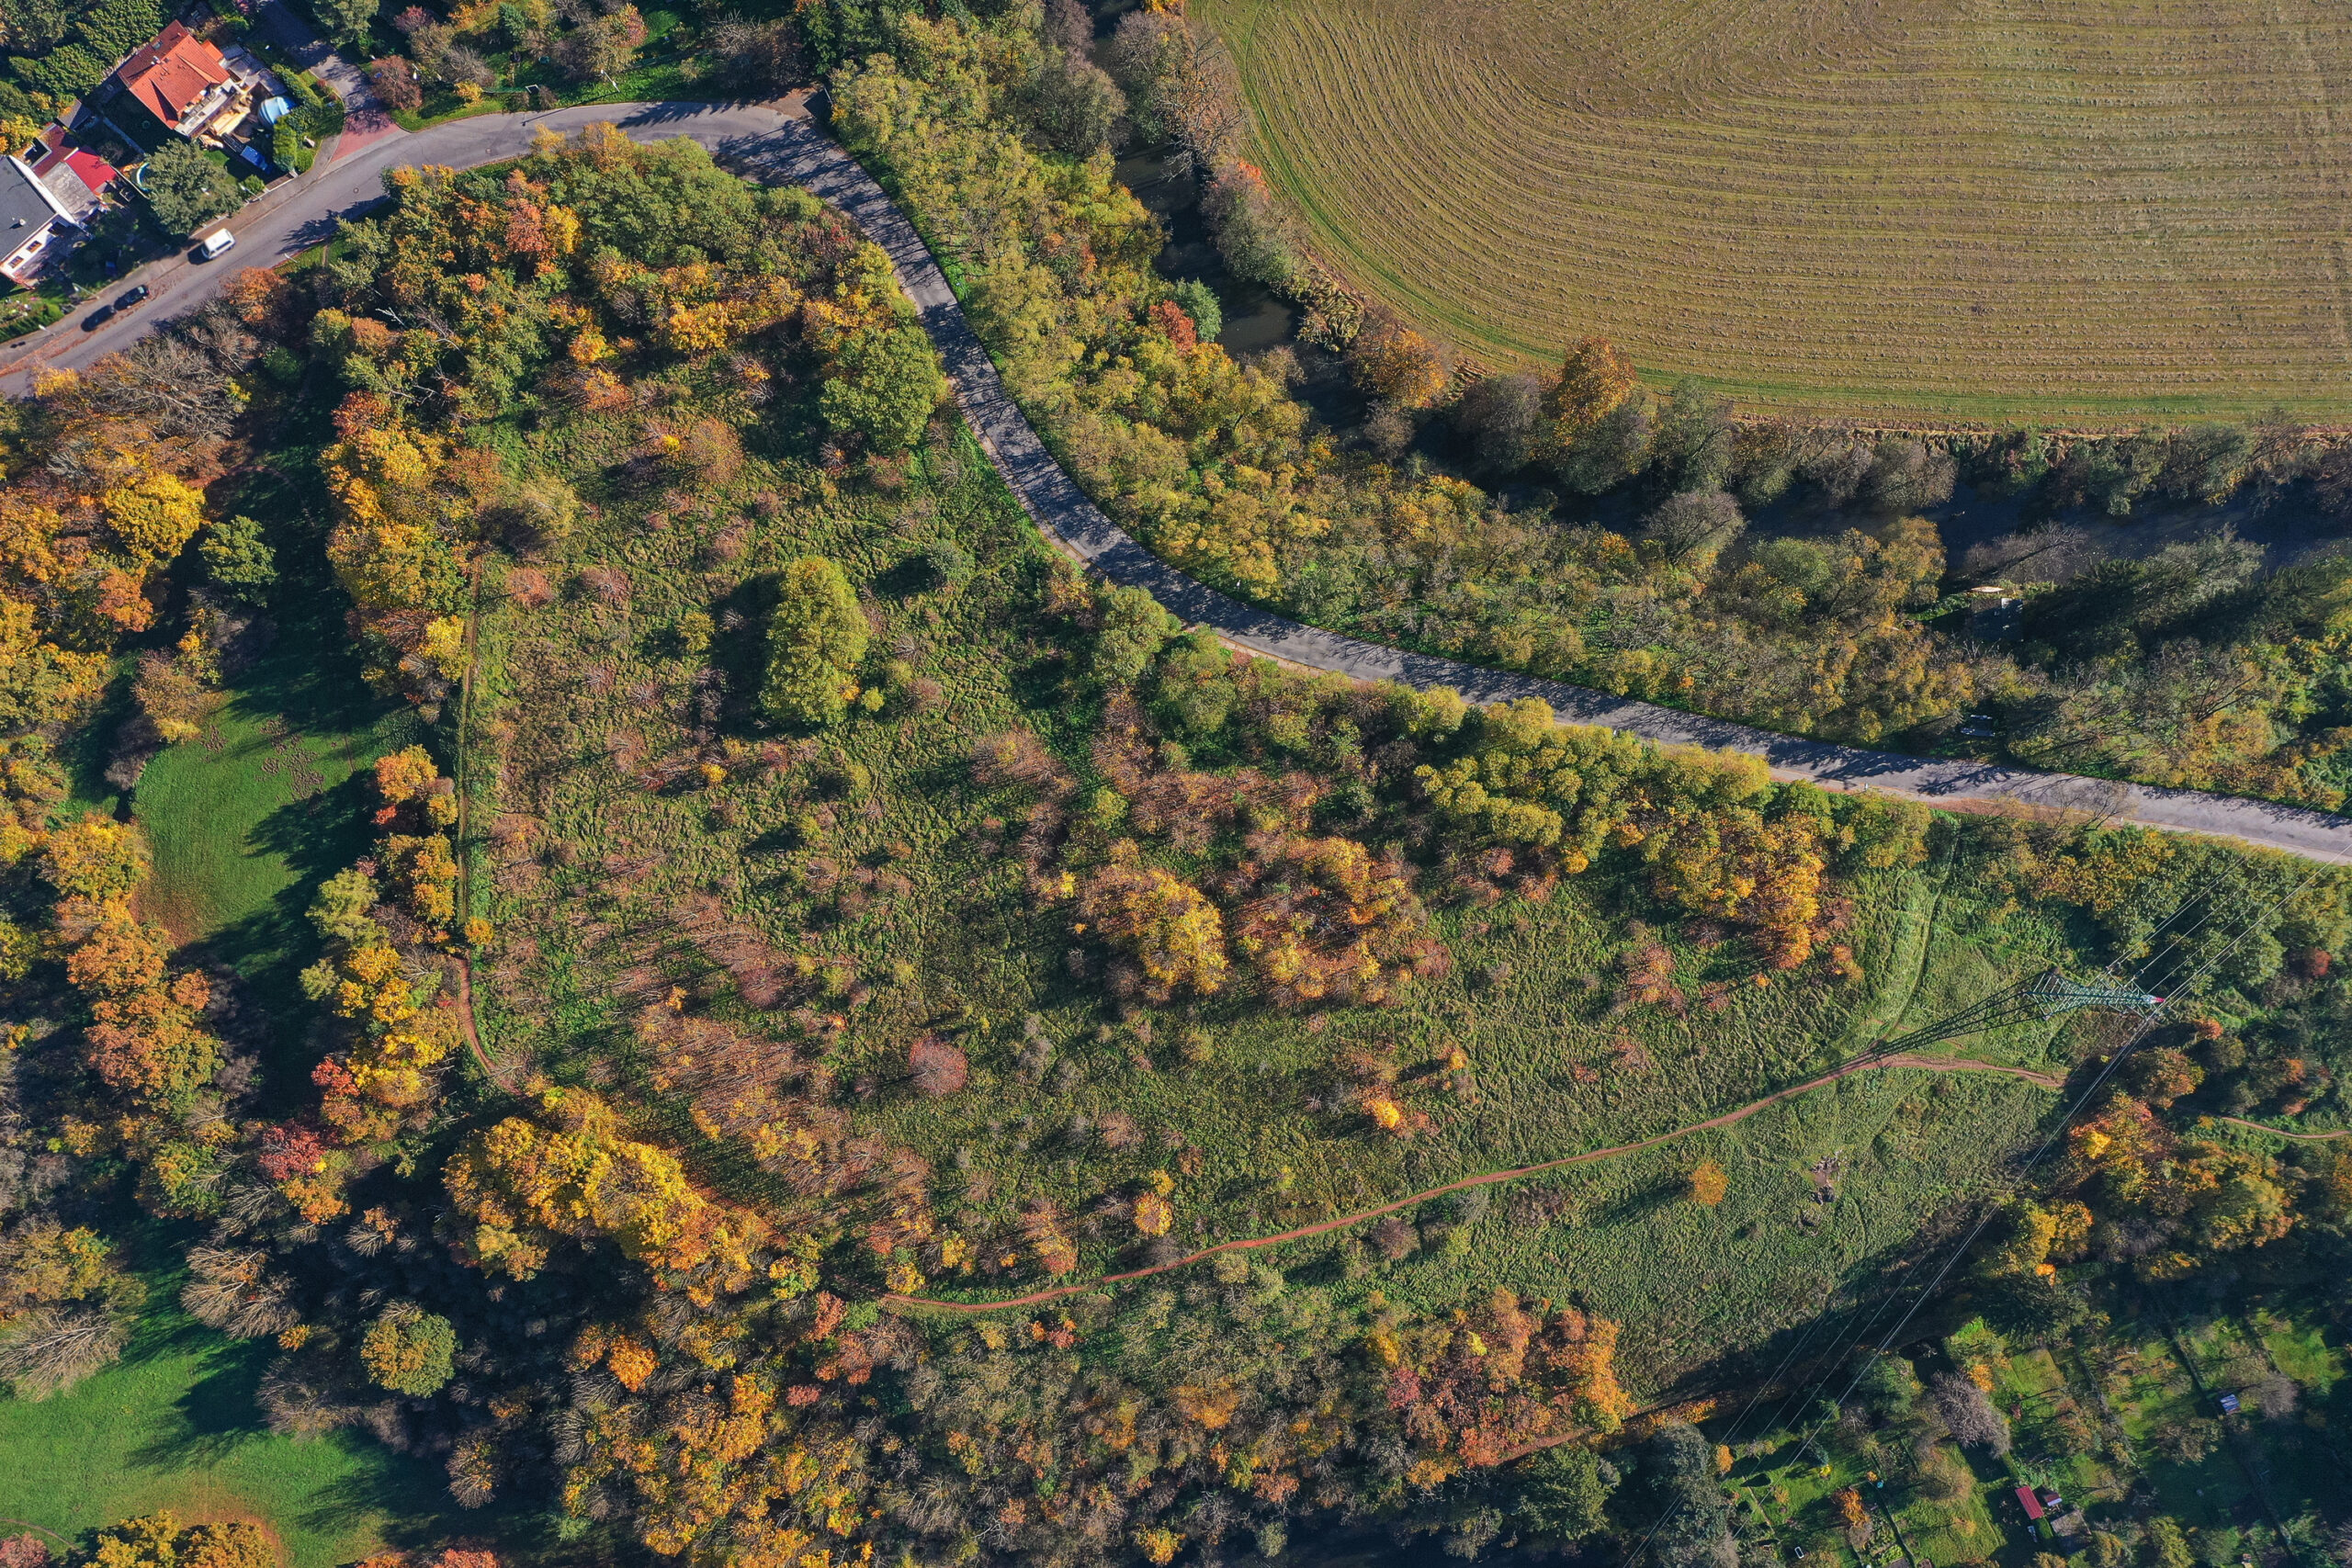 <h1>Hradiště z ptačí perspektivy</h1><br />
Horní třetinou obrázku se vine silnice, po úbočí lokality Hradiště. Na snímku vidíme travnaté plochy postupně zarůstající křovinami a stromy. Snímek byl pořízen na podzim a stromy se přebarvují ze zelené do oranžových a červených tónů.